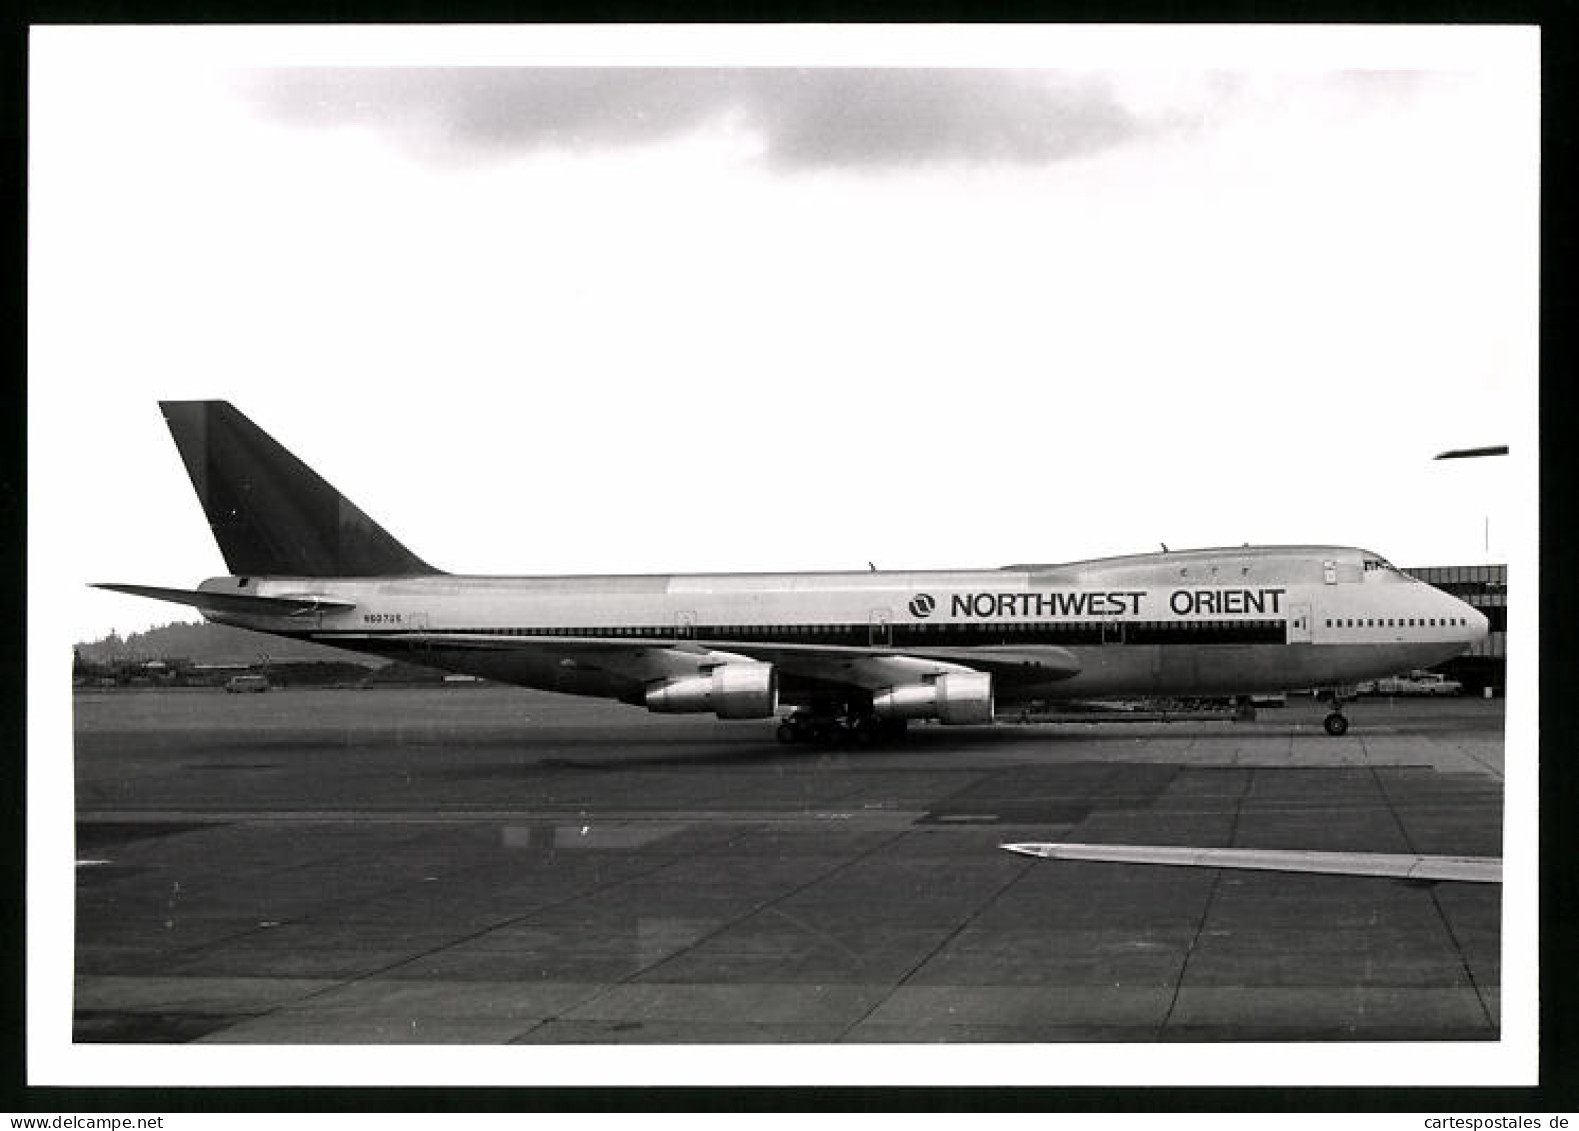 Fotografie Flugzeug Boeing 747 Jumojet, Passagierflugzeug Northwest Orient, Kennung N607US  - Luftfahrt